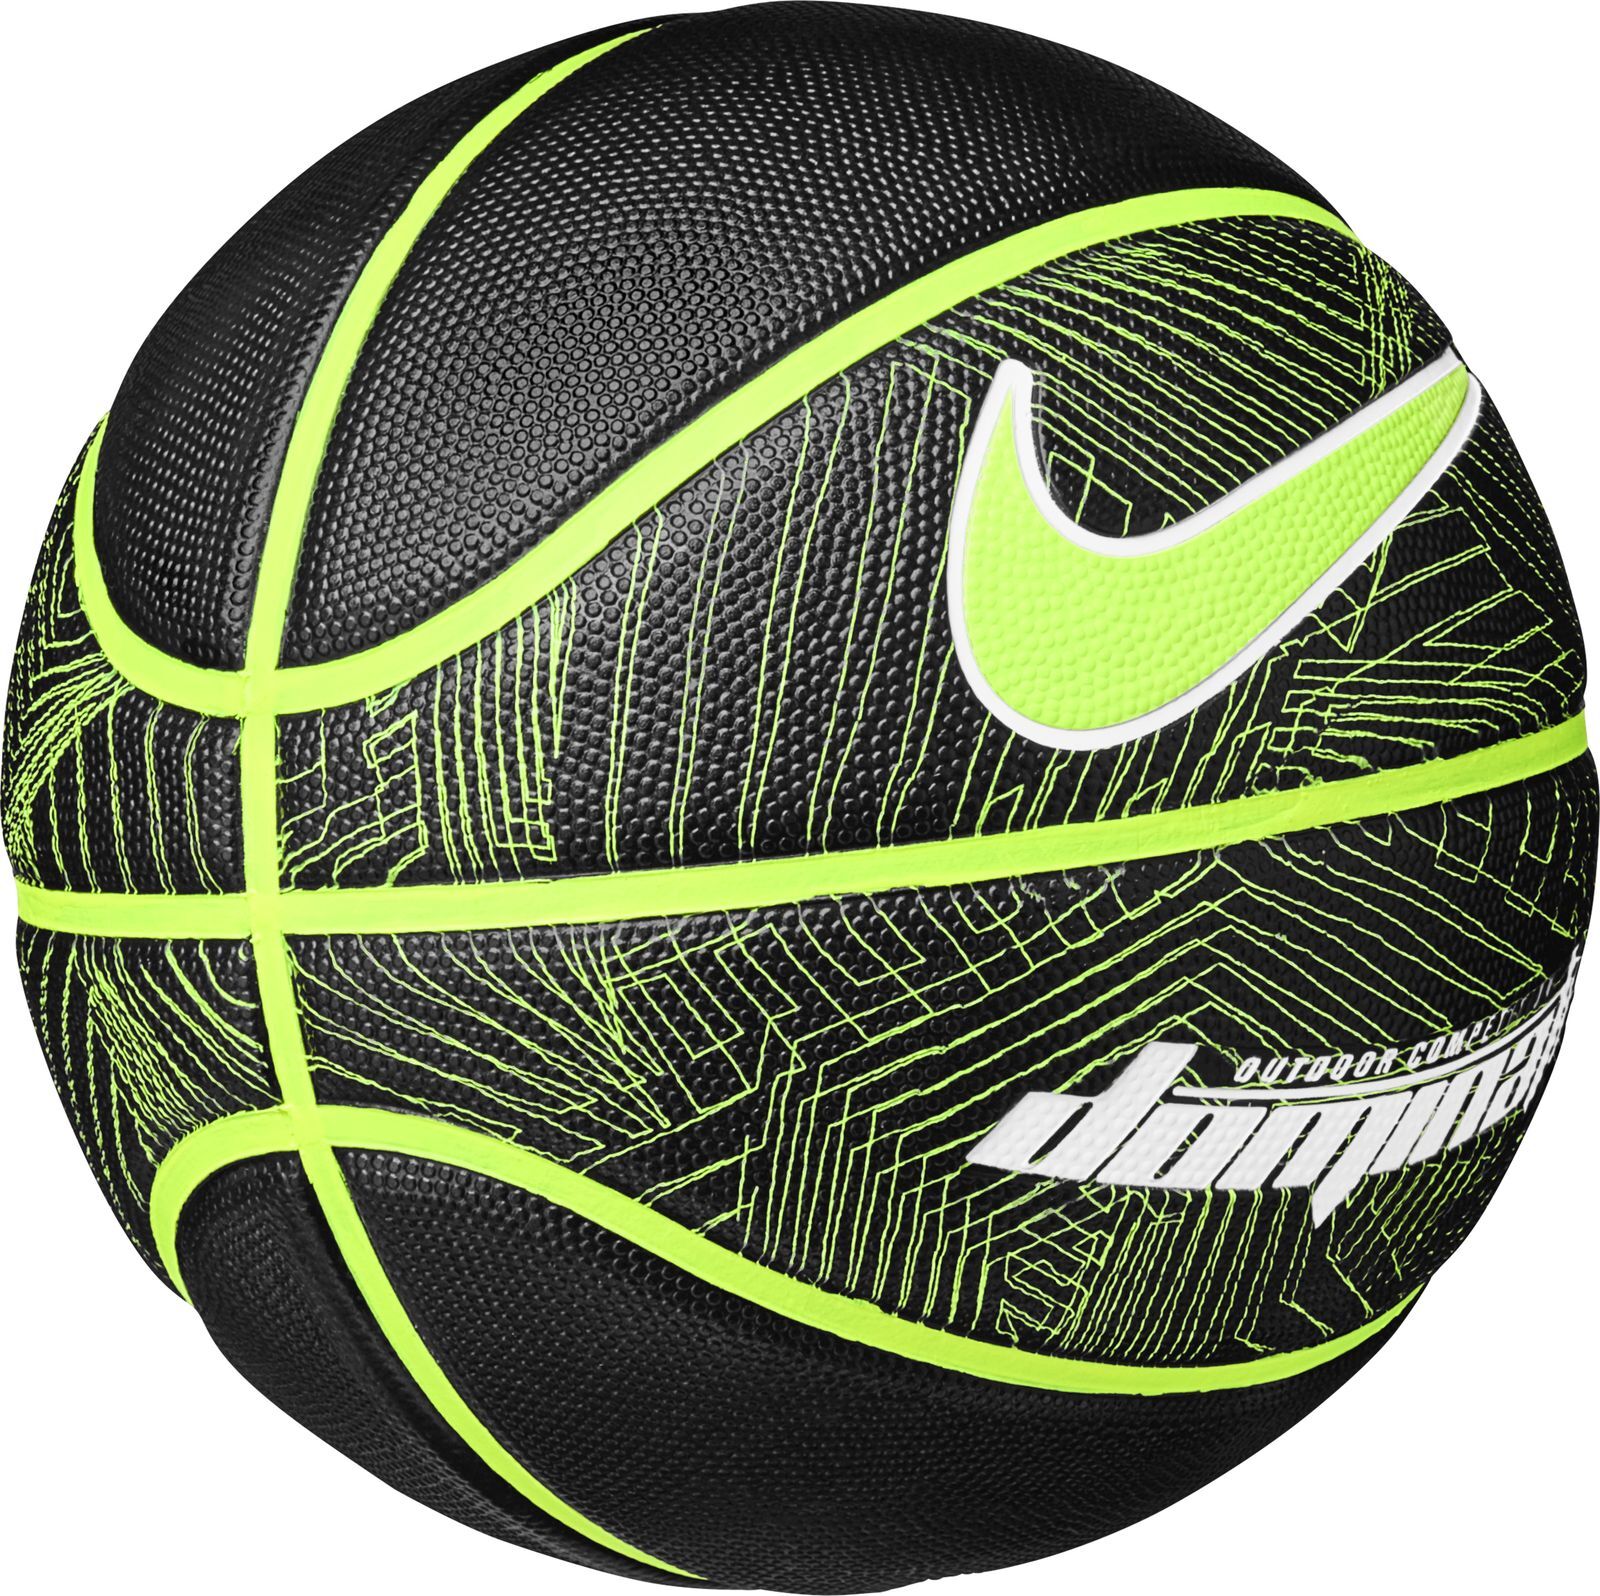 Спортивные магазины баскетбольные мячи. Баскетбольный мяч Nike dominate 8p. Баскетбольный мяч Nike dominate 7. Nike мяч баскетбольный Nike dominate. Баскетбольный мяч Nike dominate 8p 07.